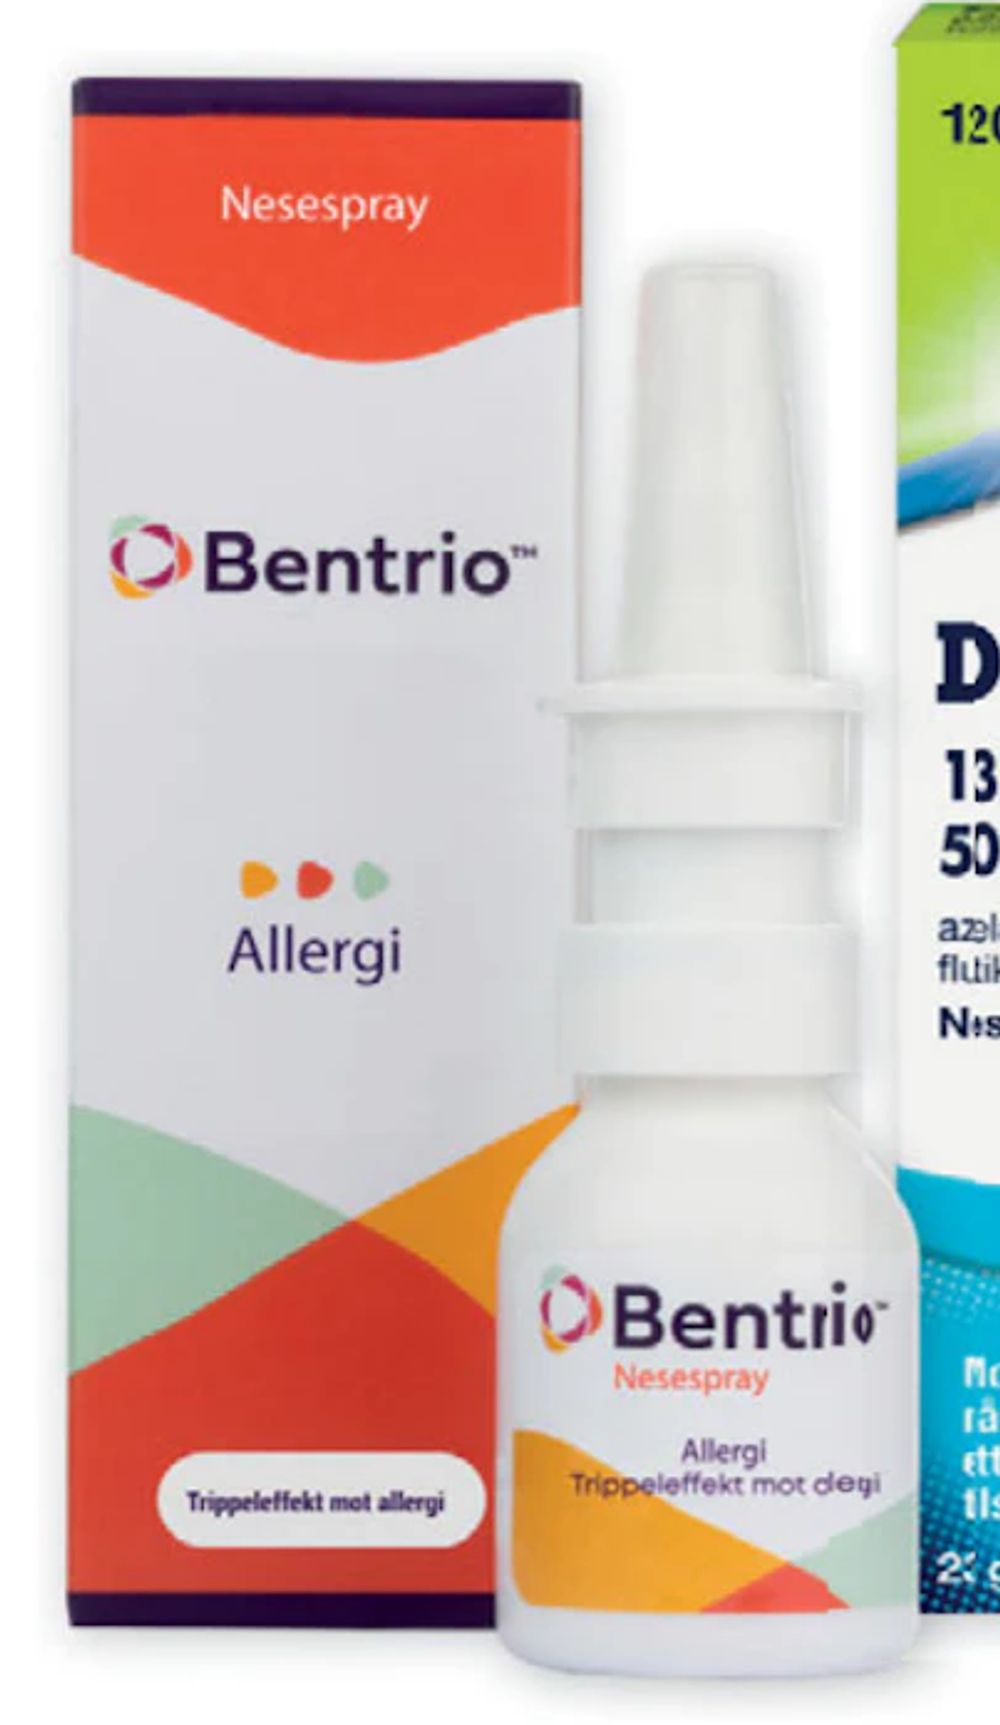 Tilbud på Bentrio nesespray fra Vitusapotek til 189,90 kr